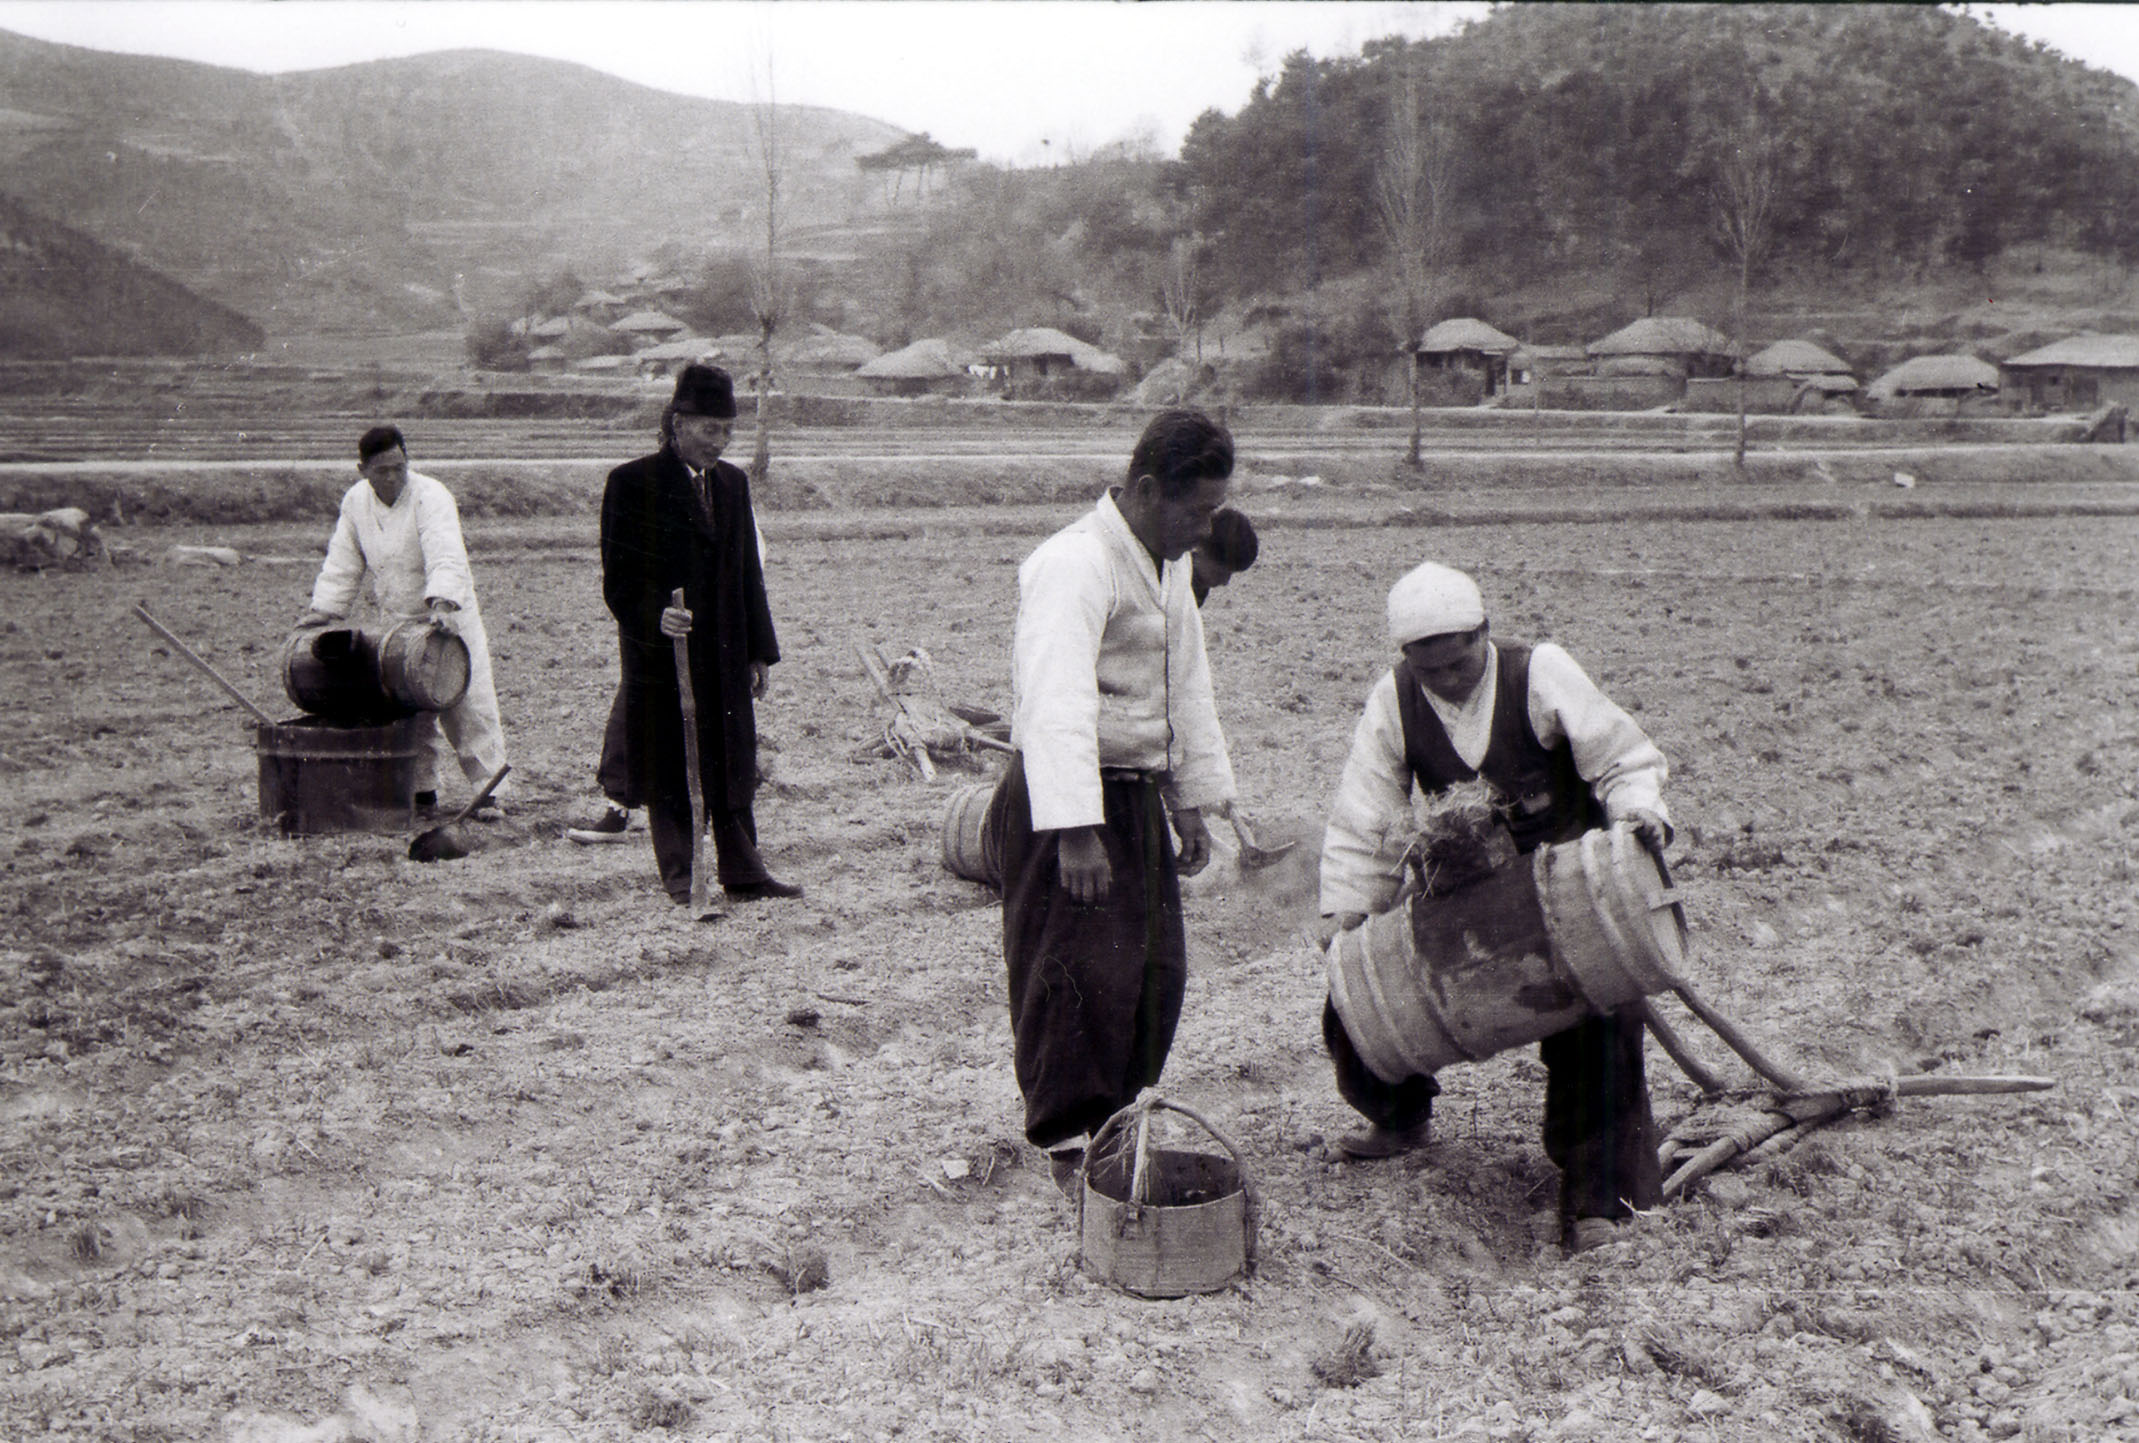 1000-30 농토배양을 위해 인분을 퍼내는 농부들(1969).jpg